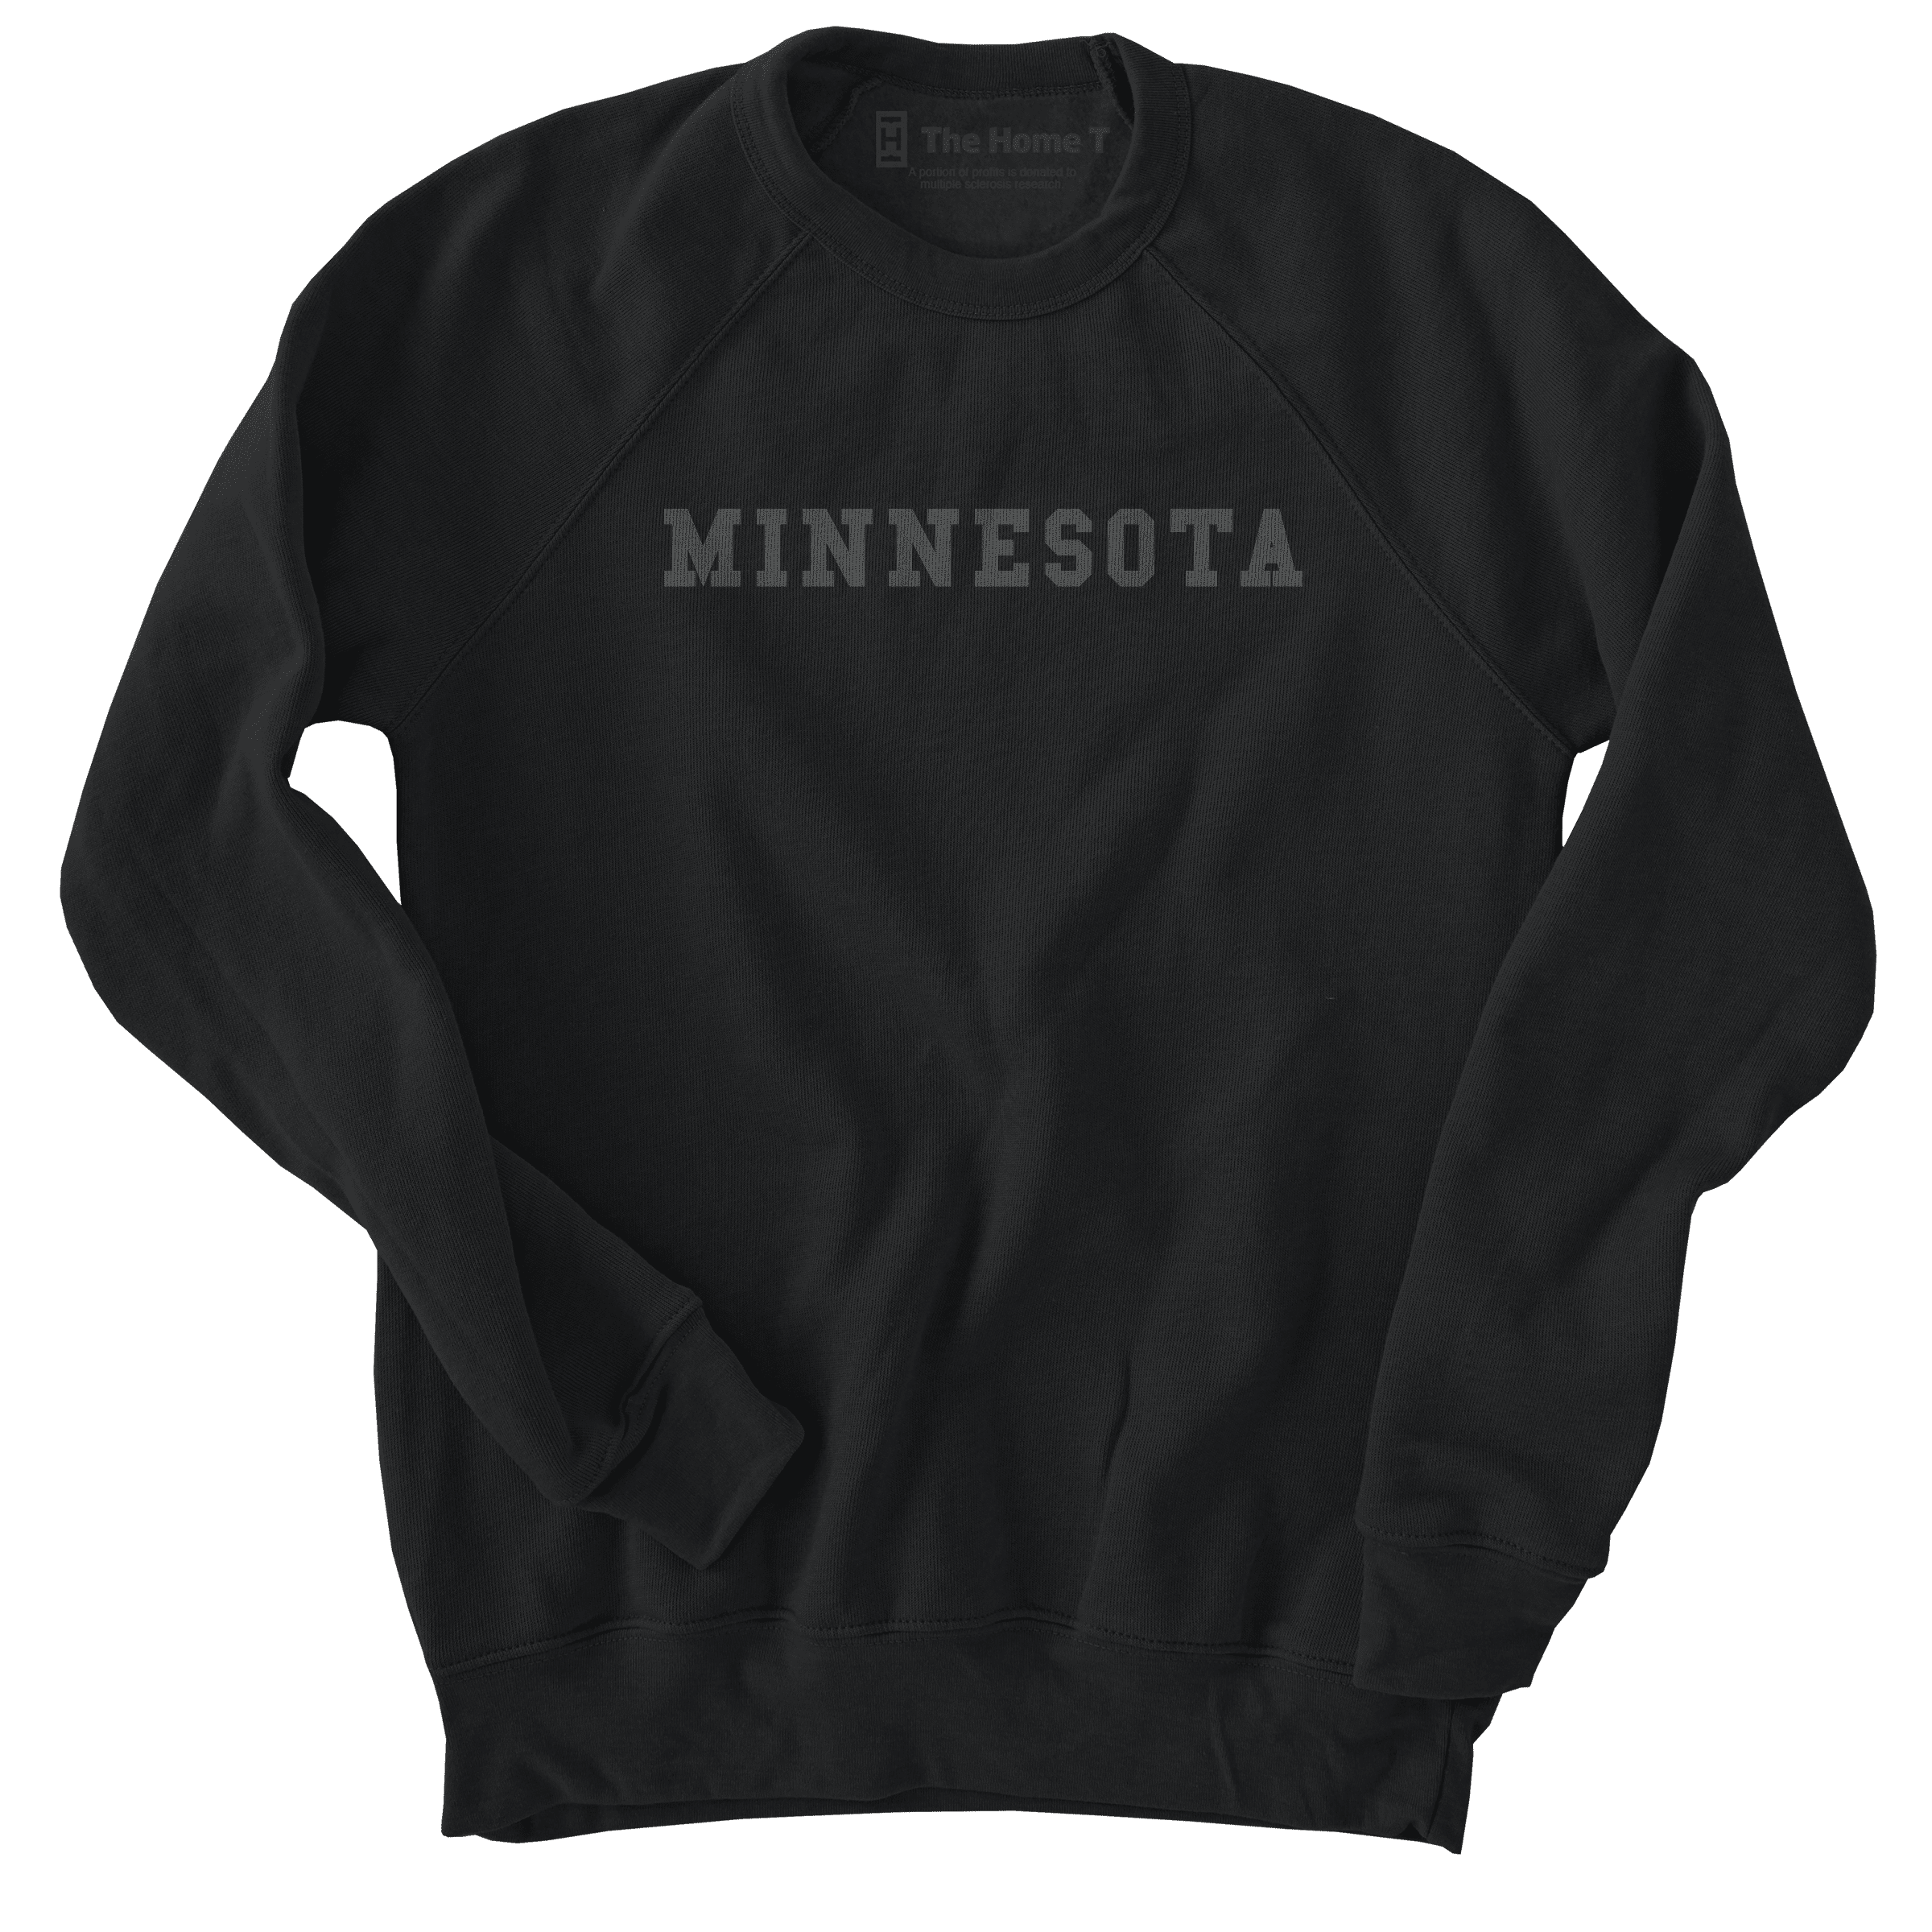 Minnesota Black on Black